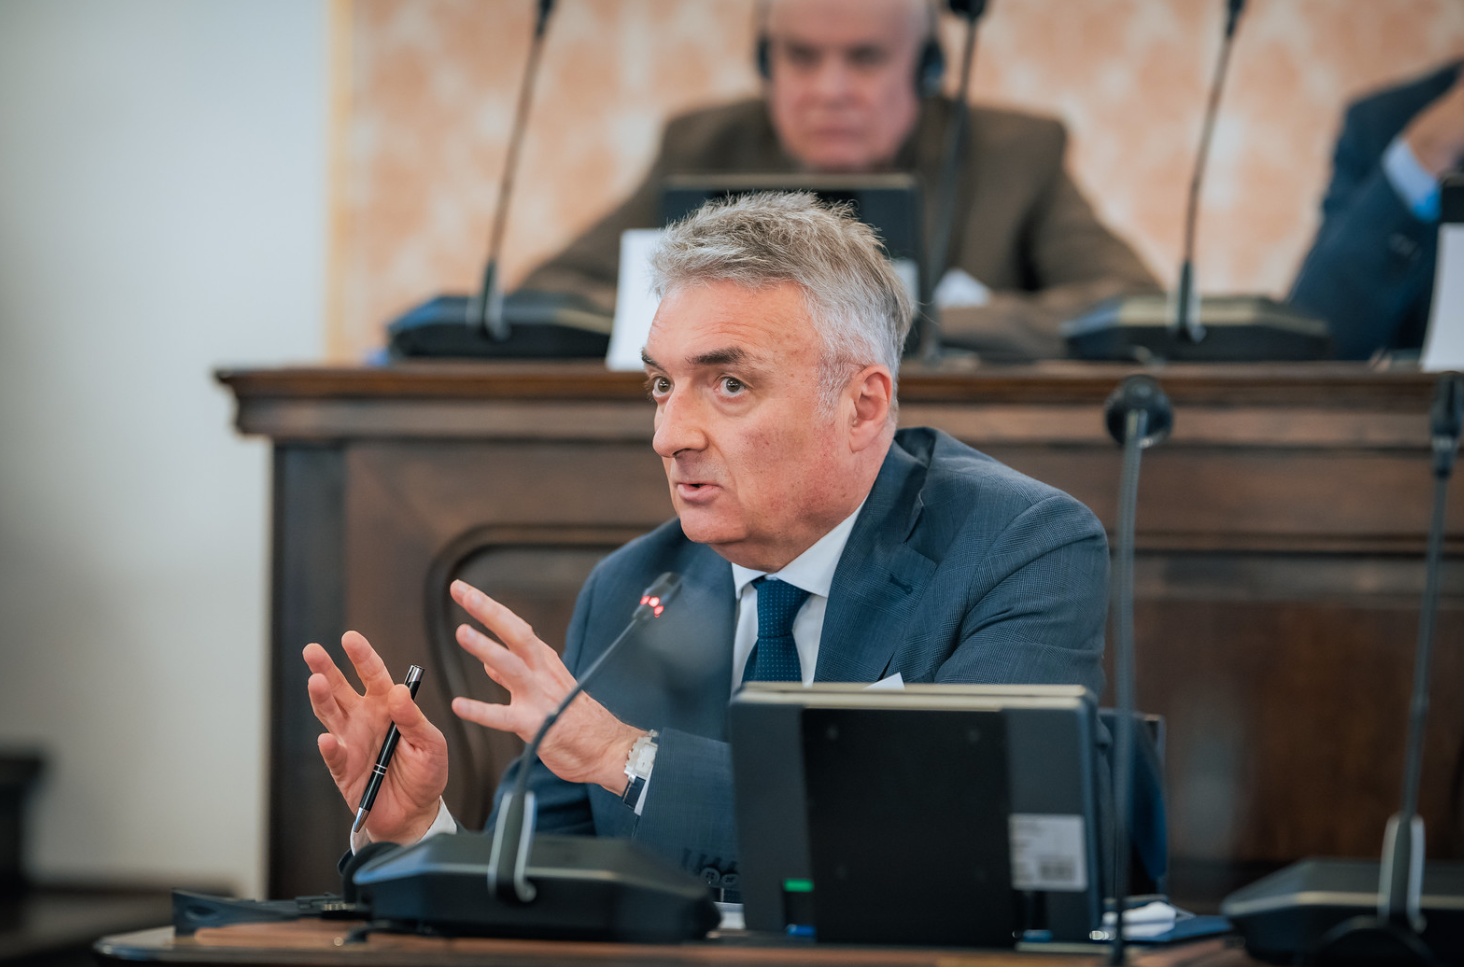 EU i Zapadni Balkan, Moldavija, Ukrajina: “Povijesni imperativ” ili želja? — Miodrag Vlahović